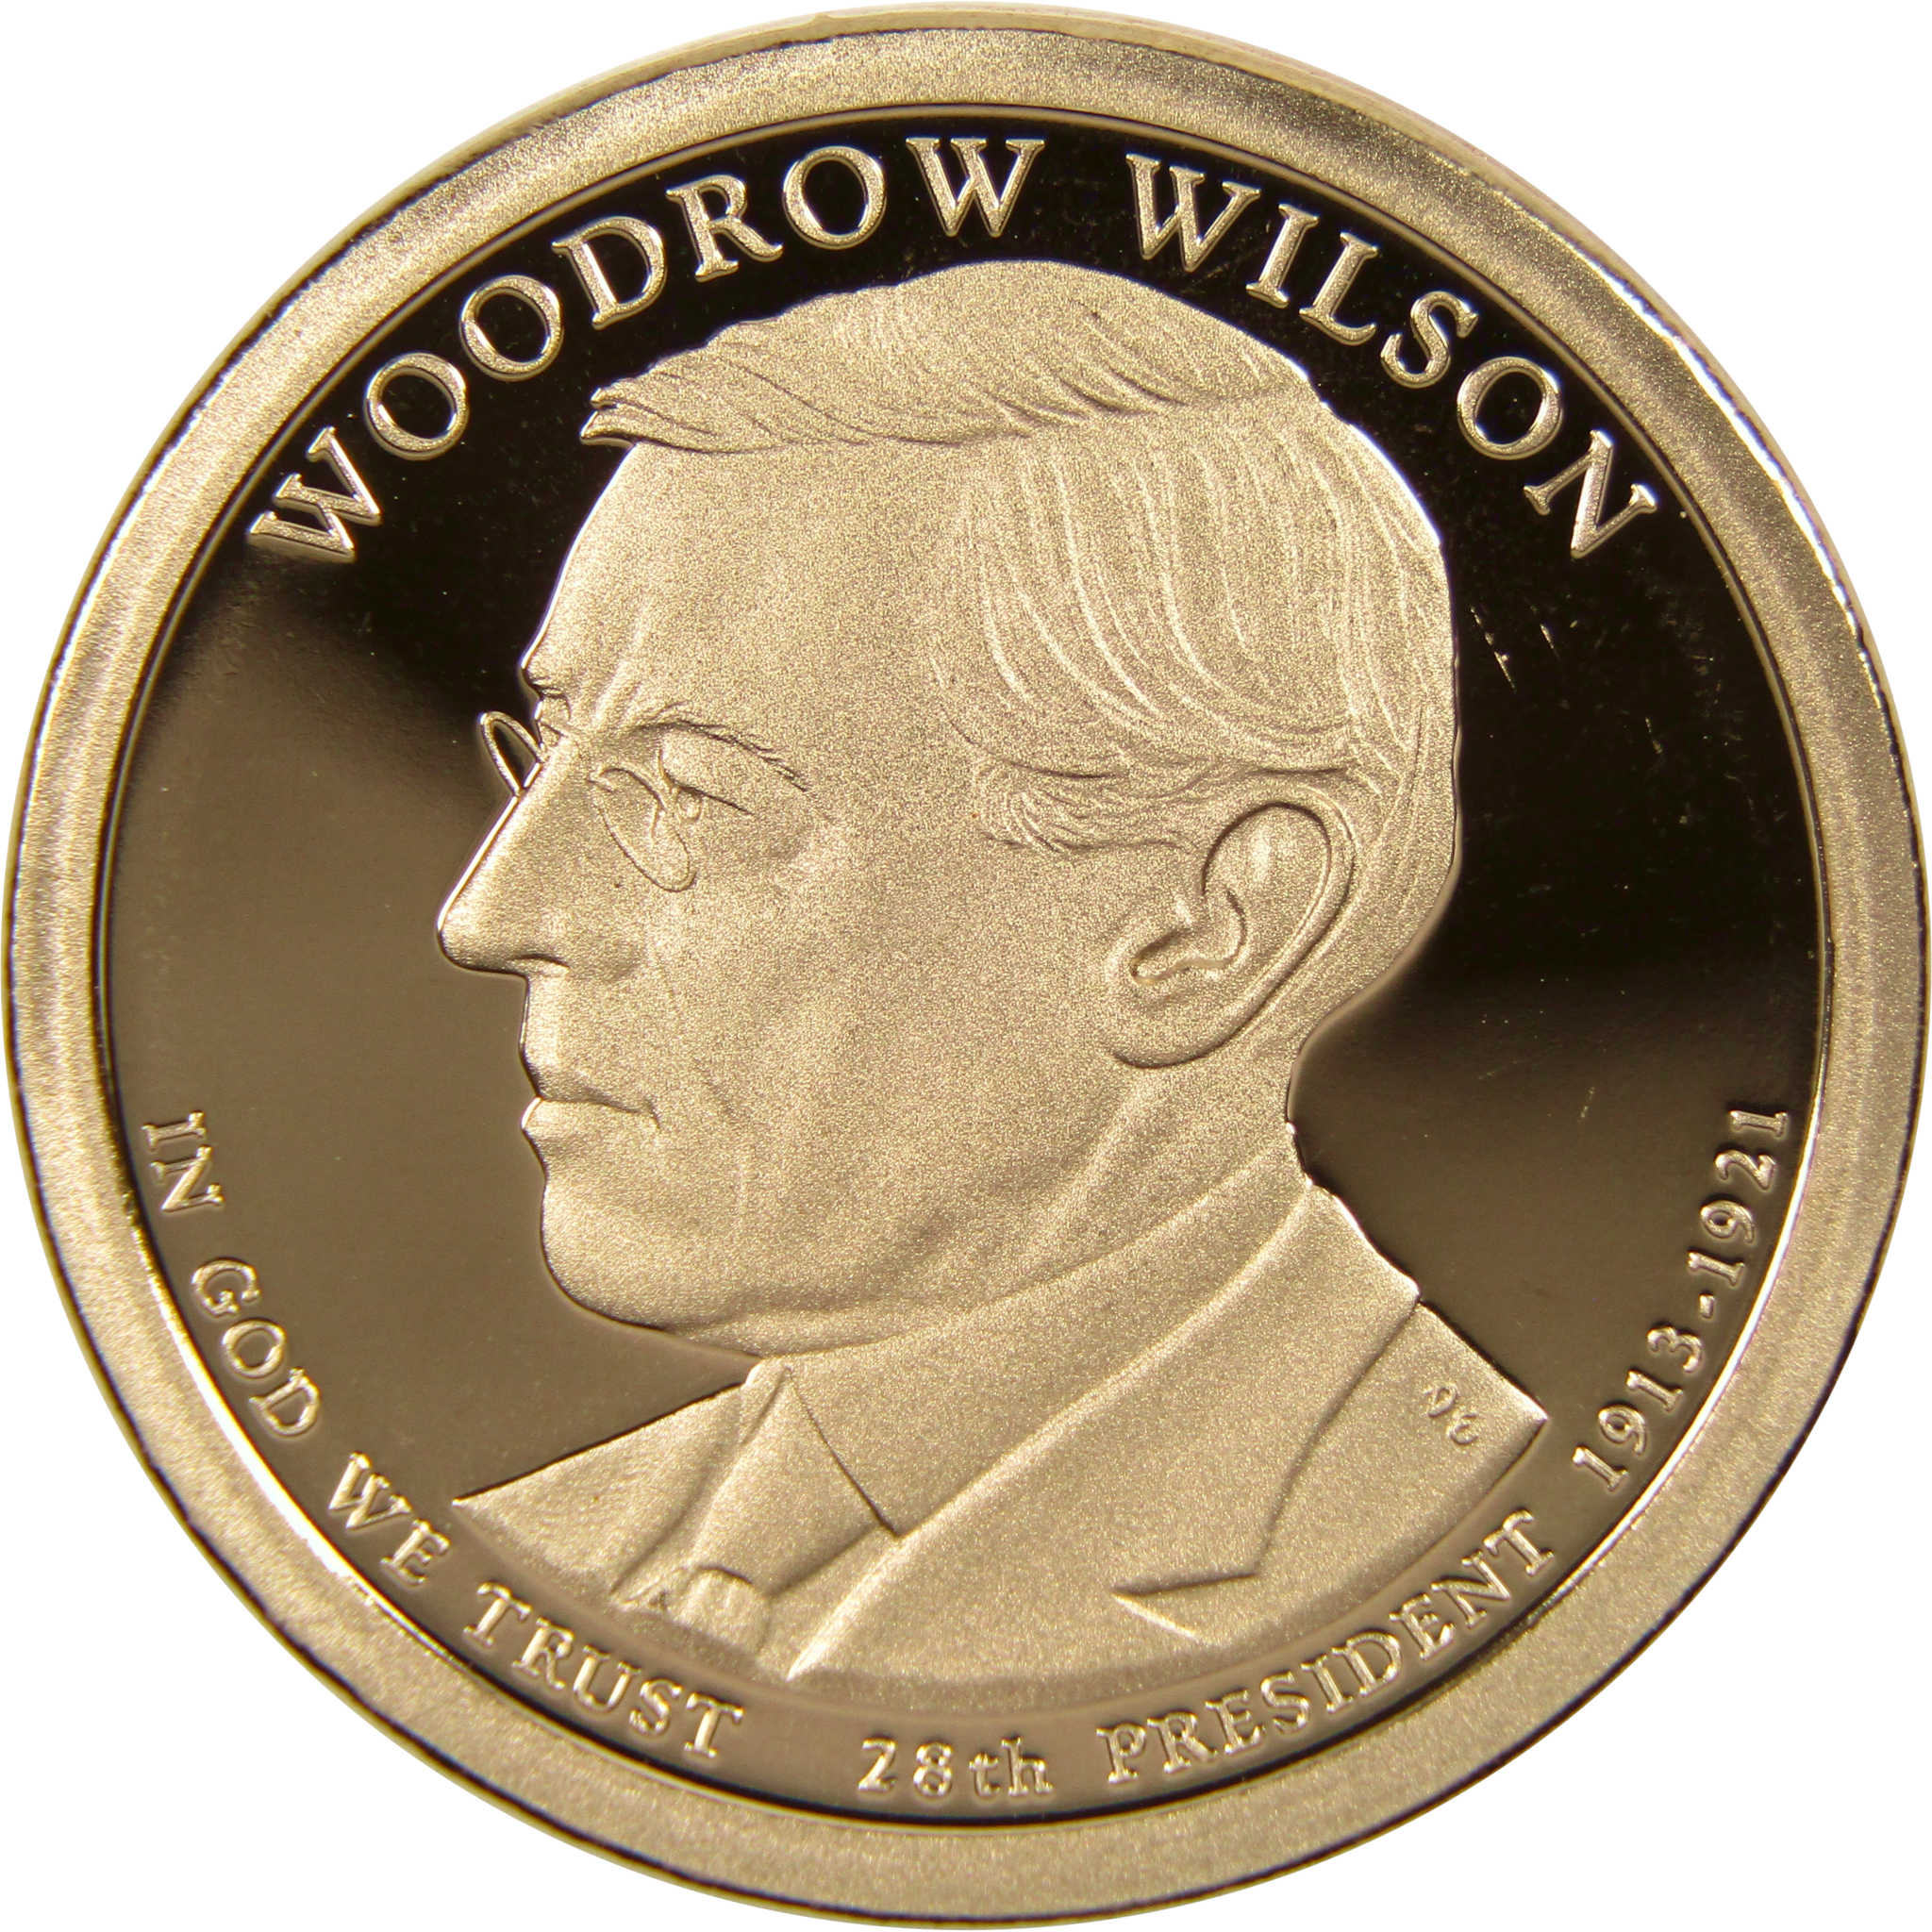 2013 S Woodrow Wilson Presidential Dollar Choice Proof $1 Coin